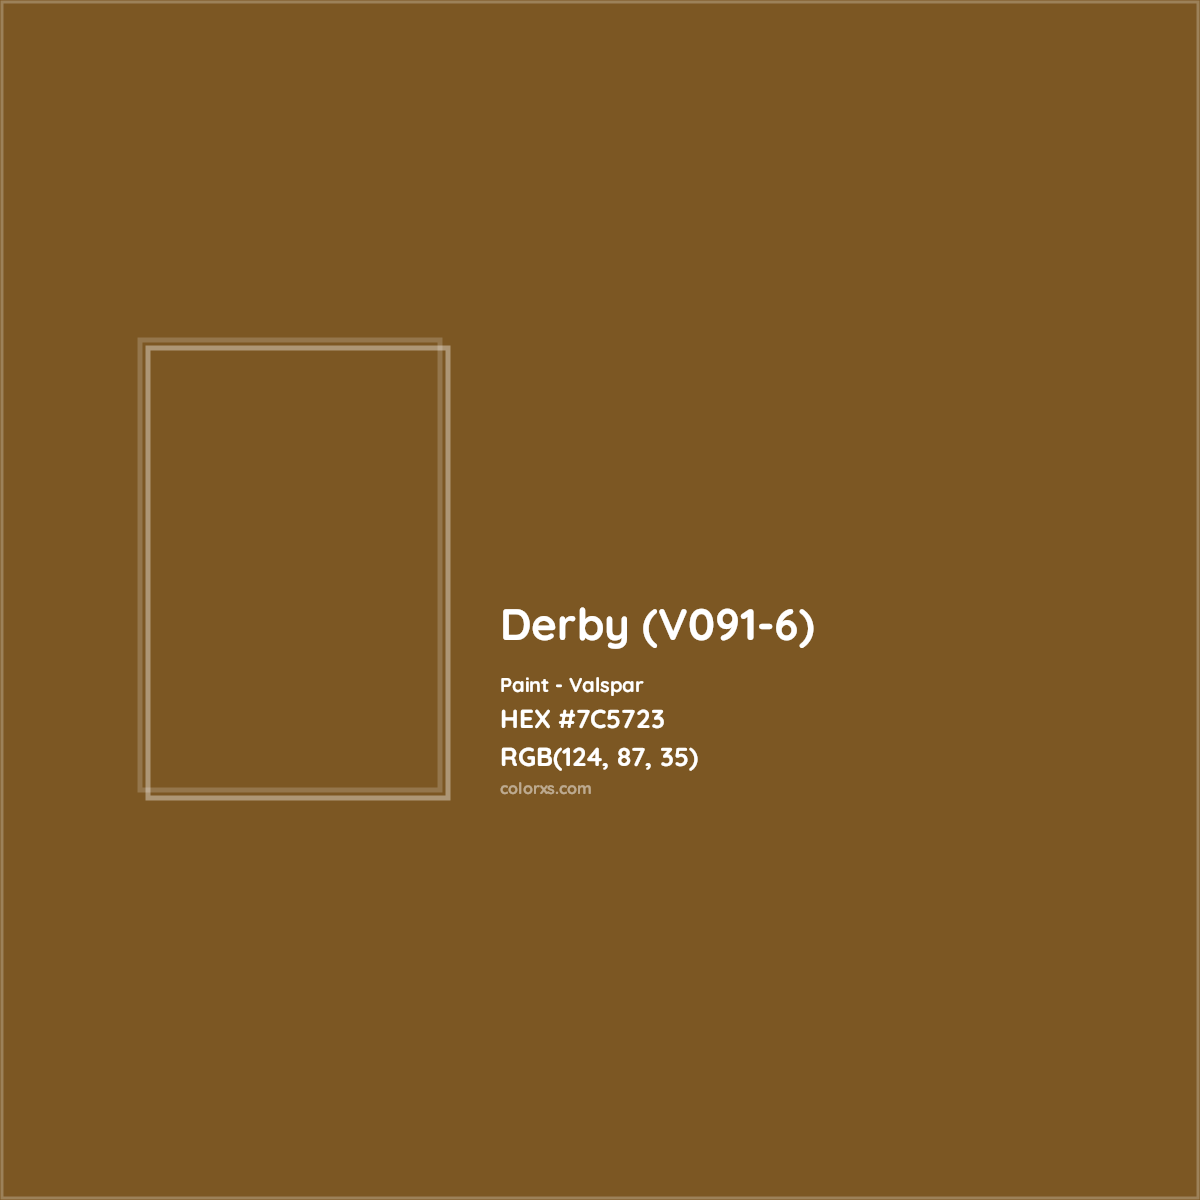 HEX #7C5723 Derby (V091-6) Paint Valspar - Color Code